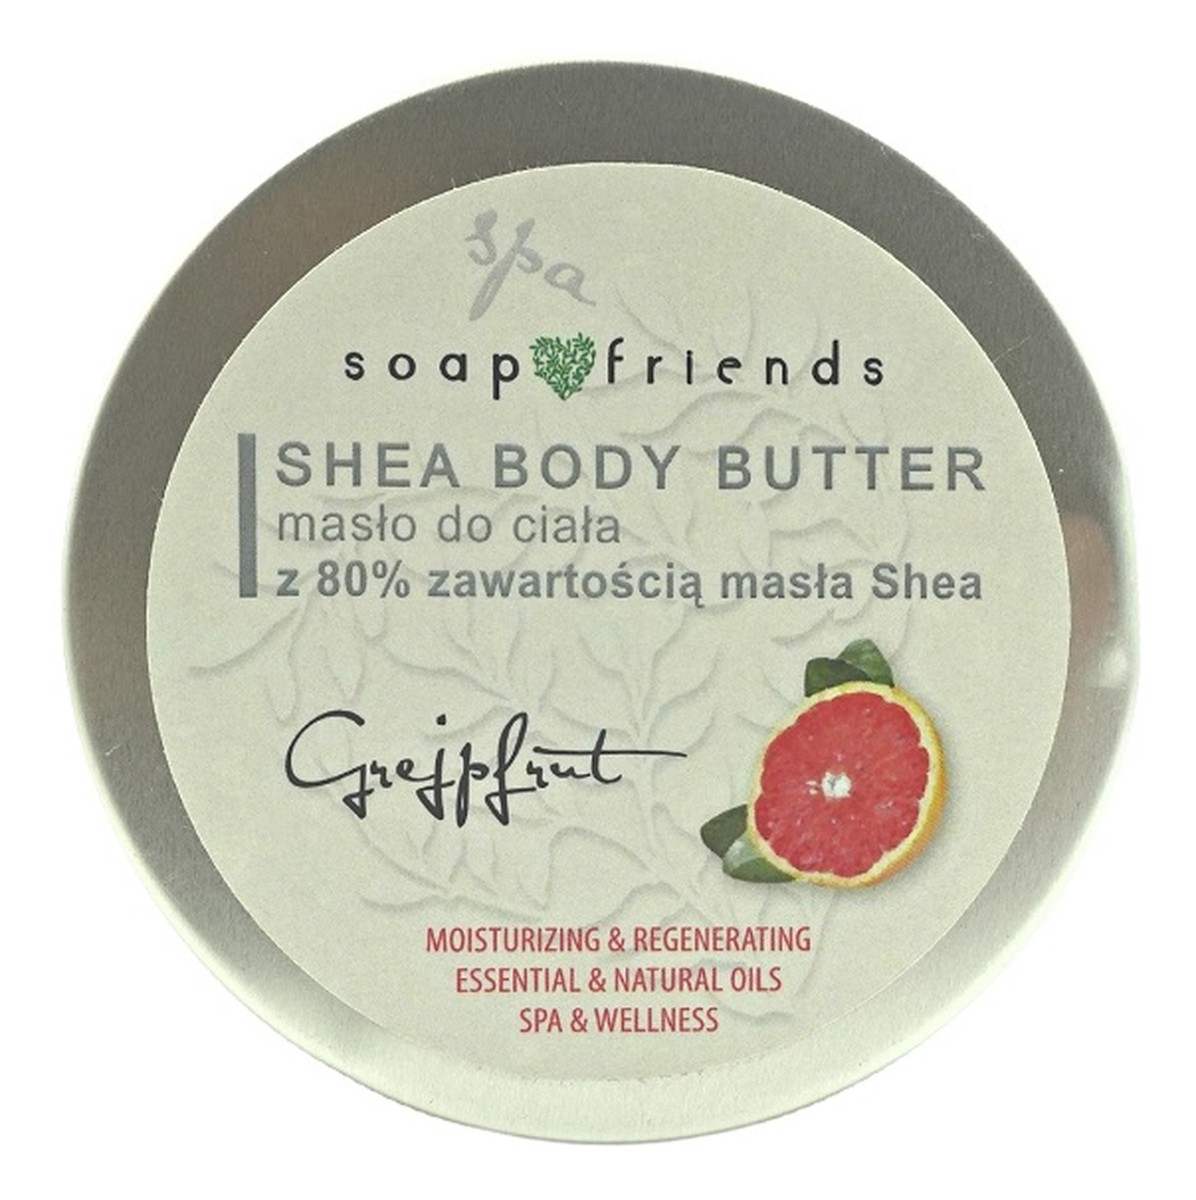 Shea butter 80% masło do ciała grejpfrut